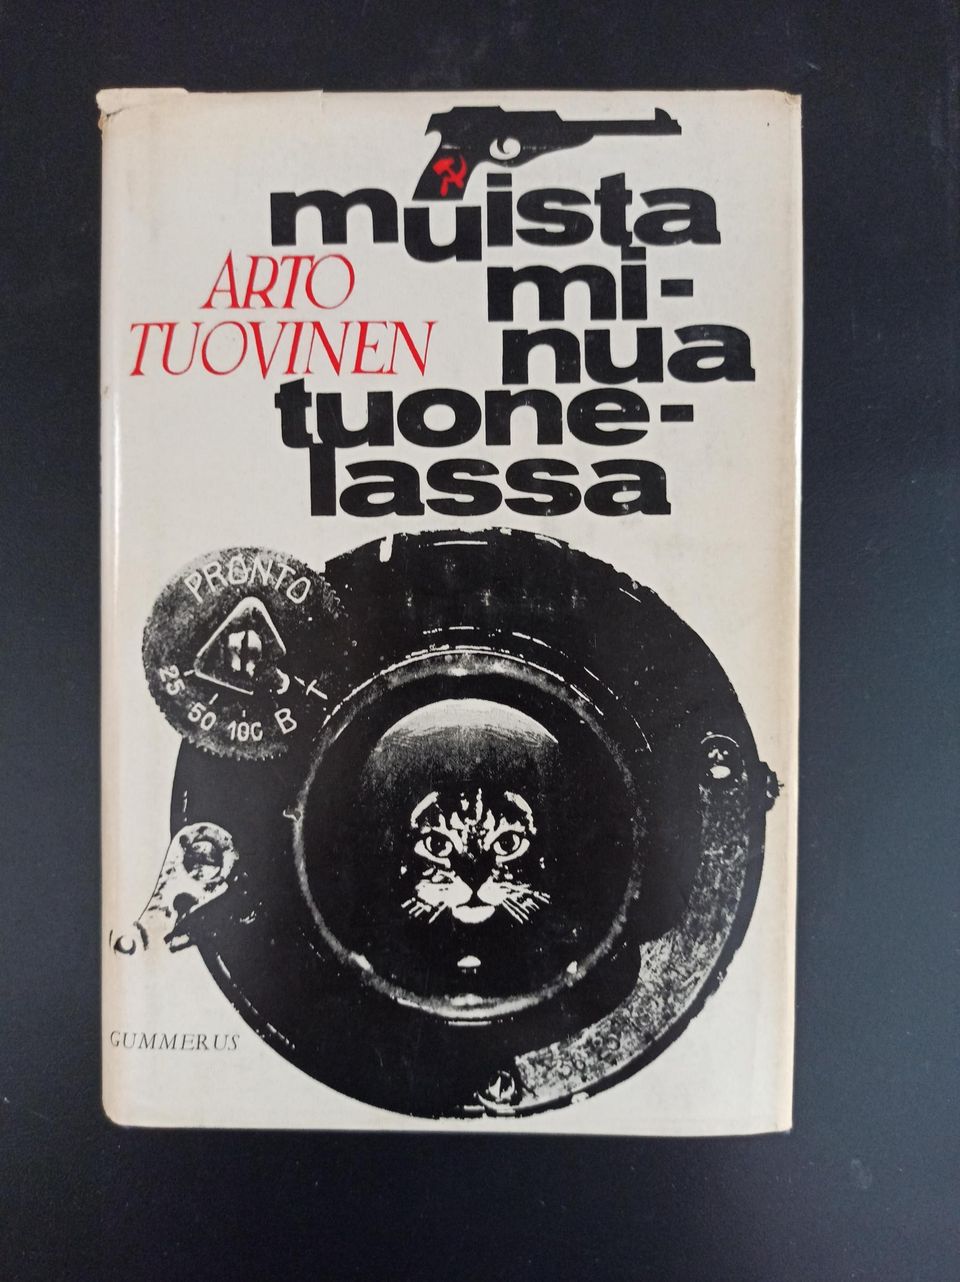 Muista minua tuonelassa, Arto Tuovinen, v. 1966